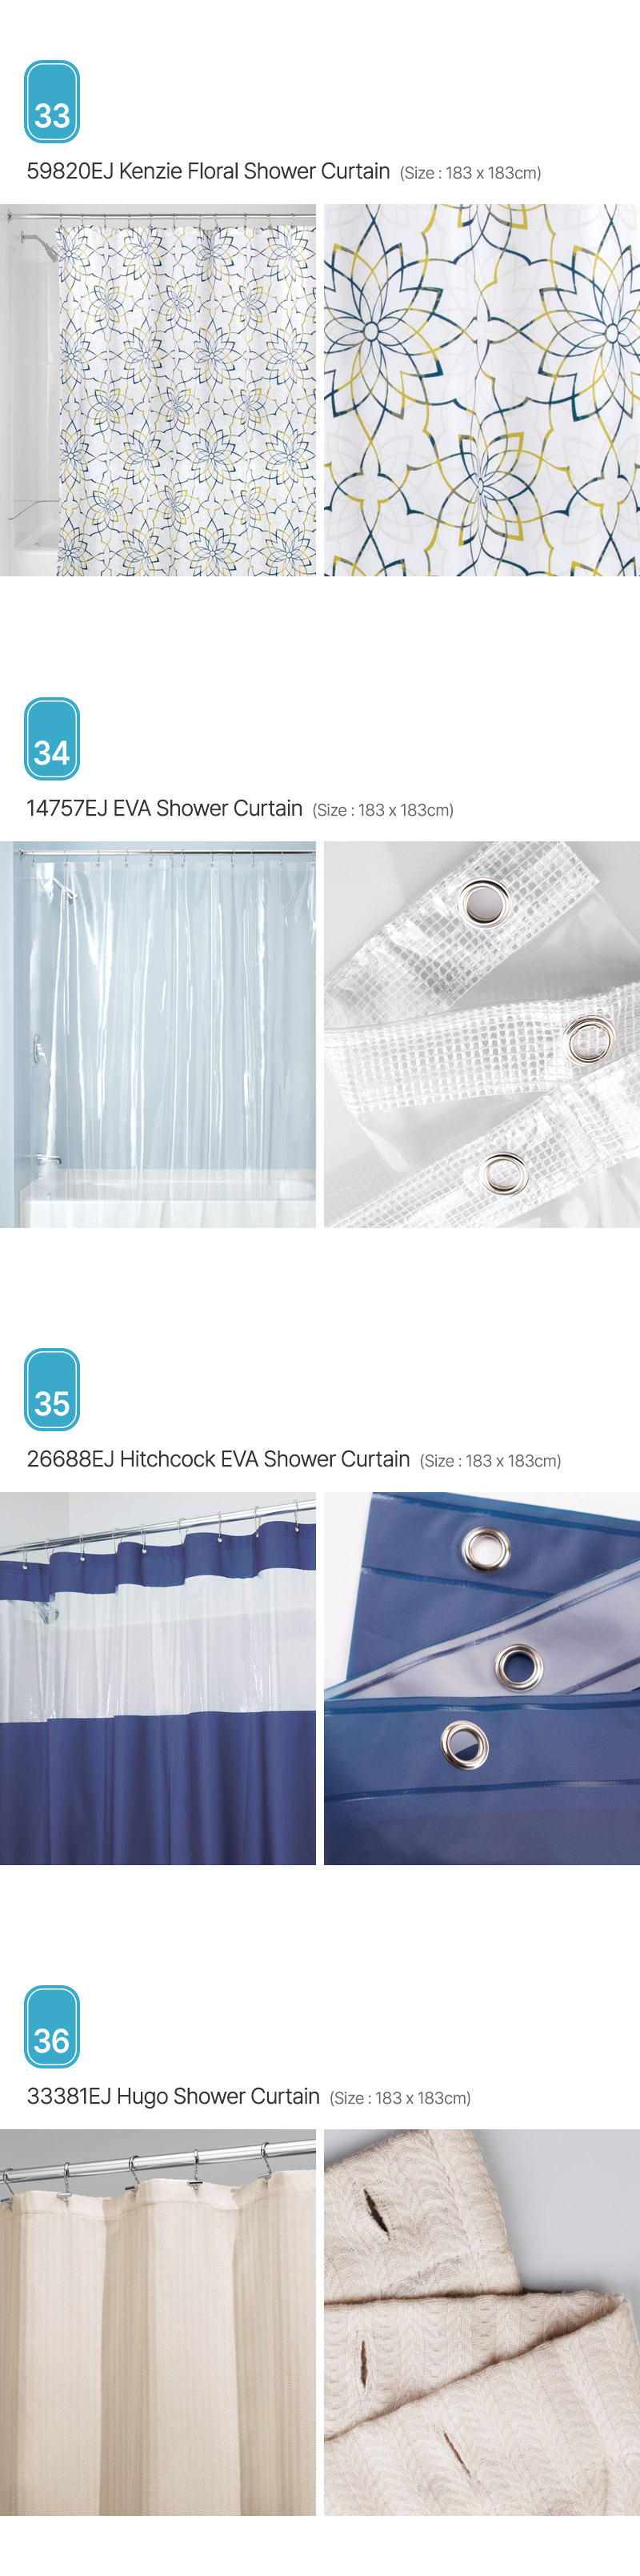 Aria_Shower-Curtain_09.jpg